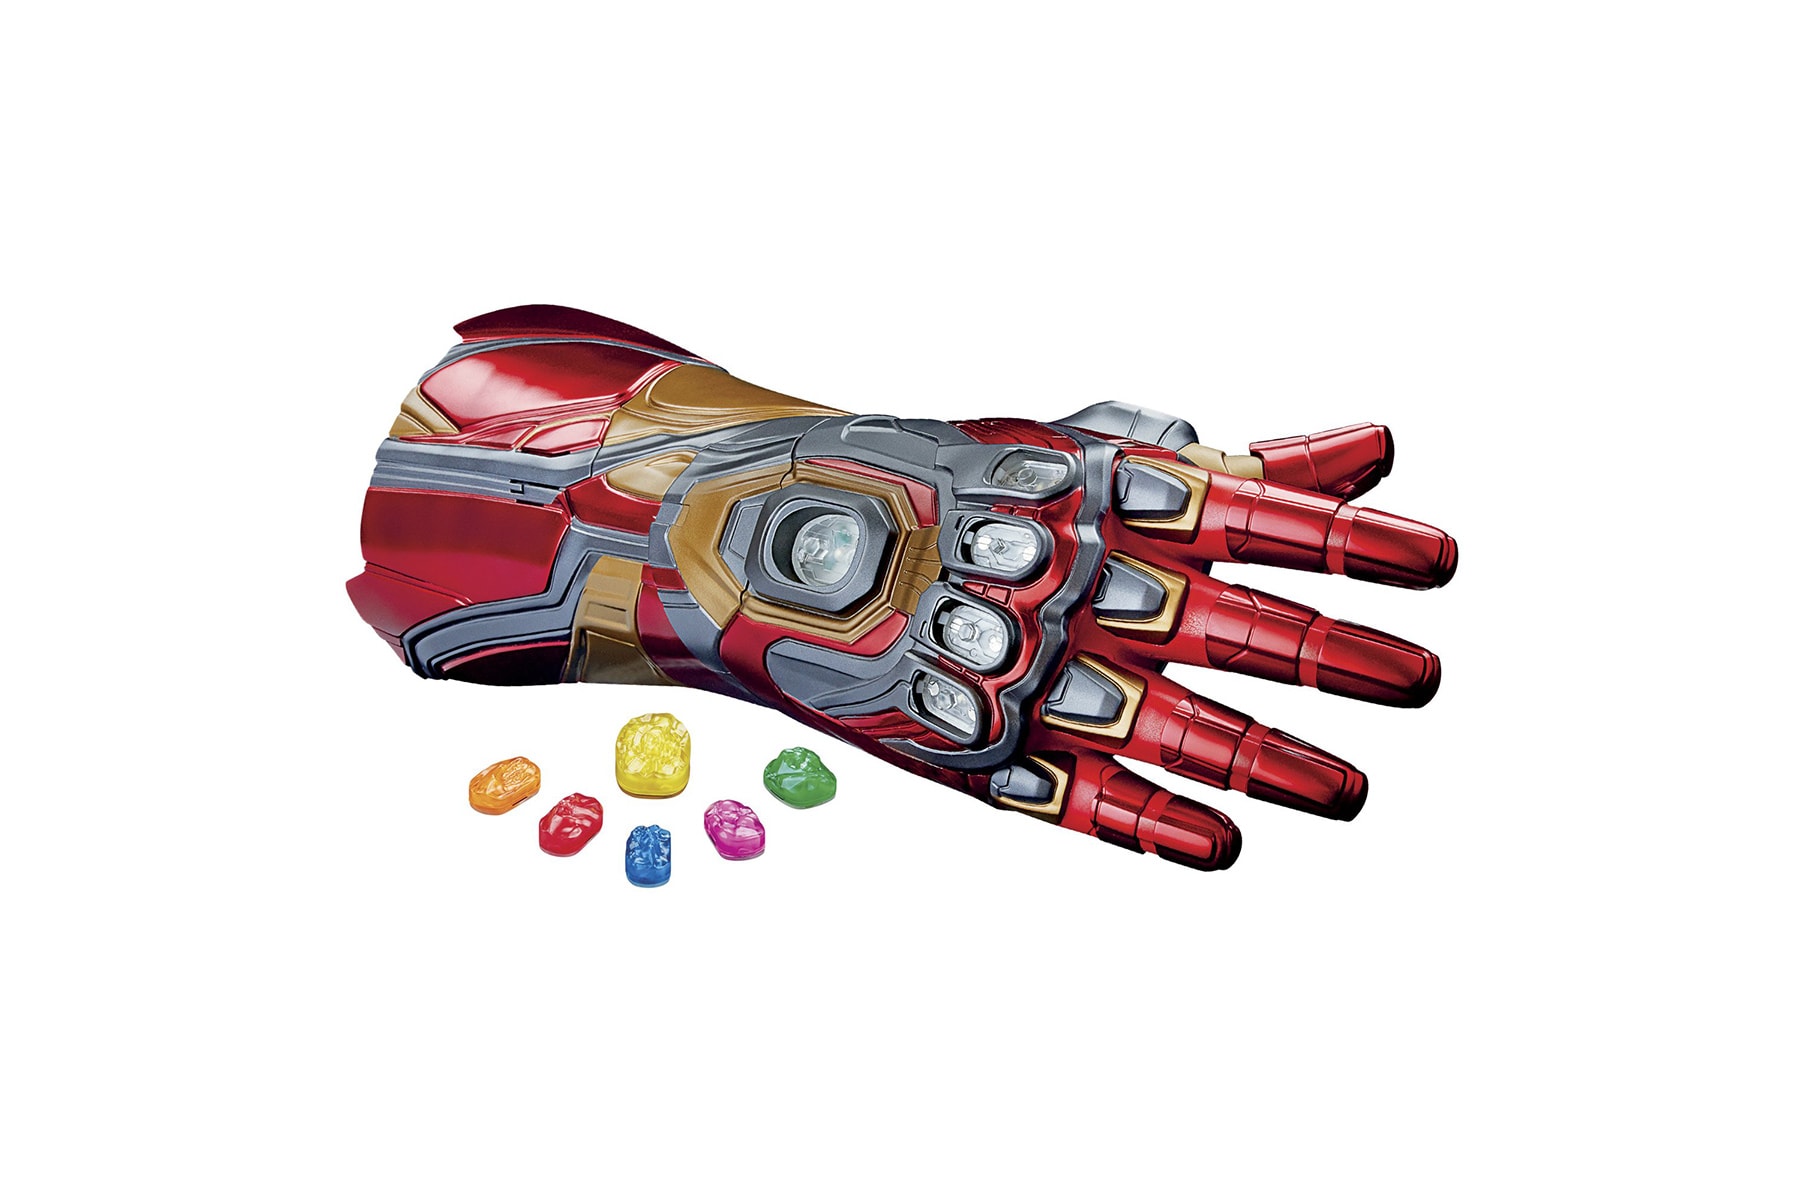 Hasbro 推出 Iron Man 配戴之 1:1 真實尺寸「Nano Gauntlet 無限手套」